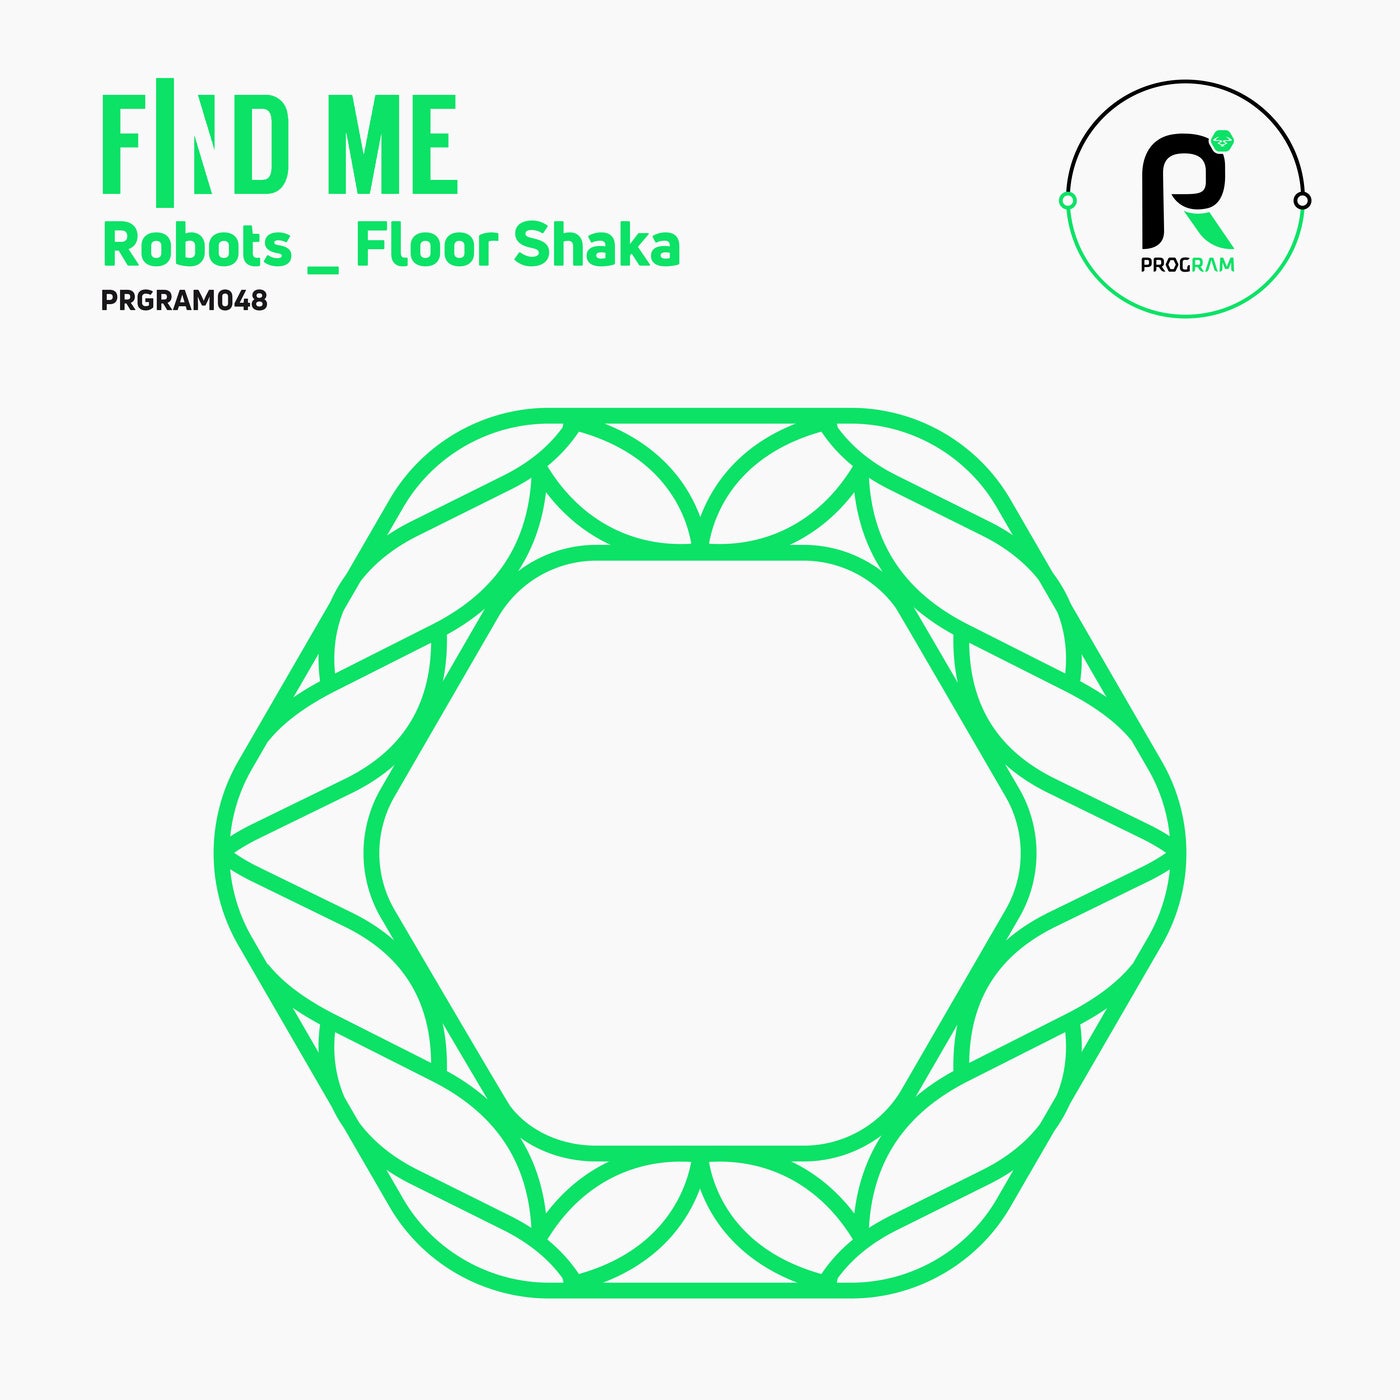 Robots / Floor Shaka